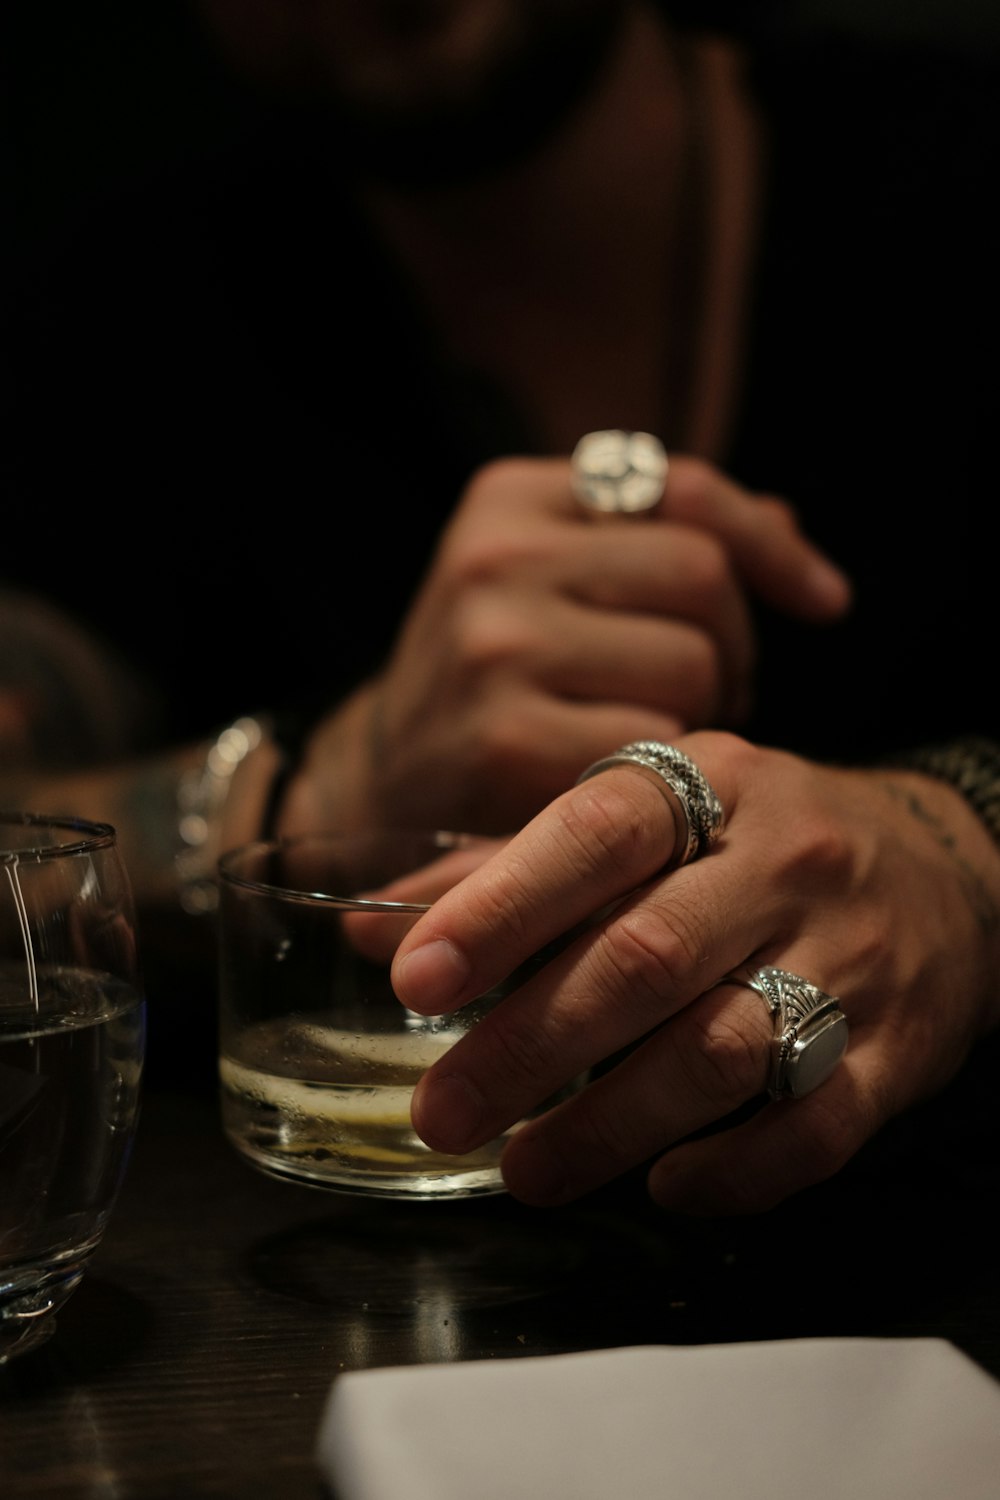 Persona que lleva un anillo de plata sosteniendo un vaso transparente para beber